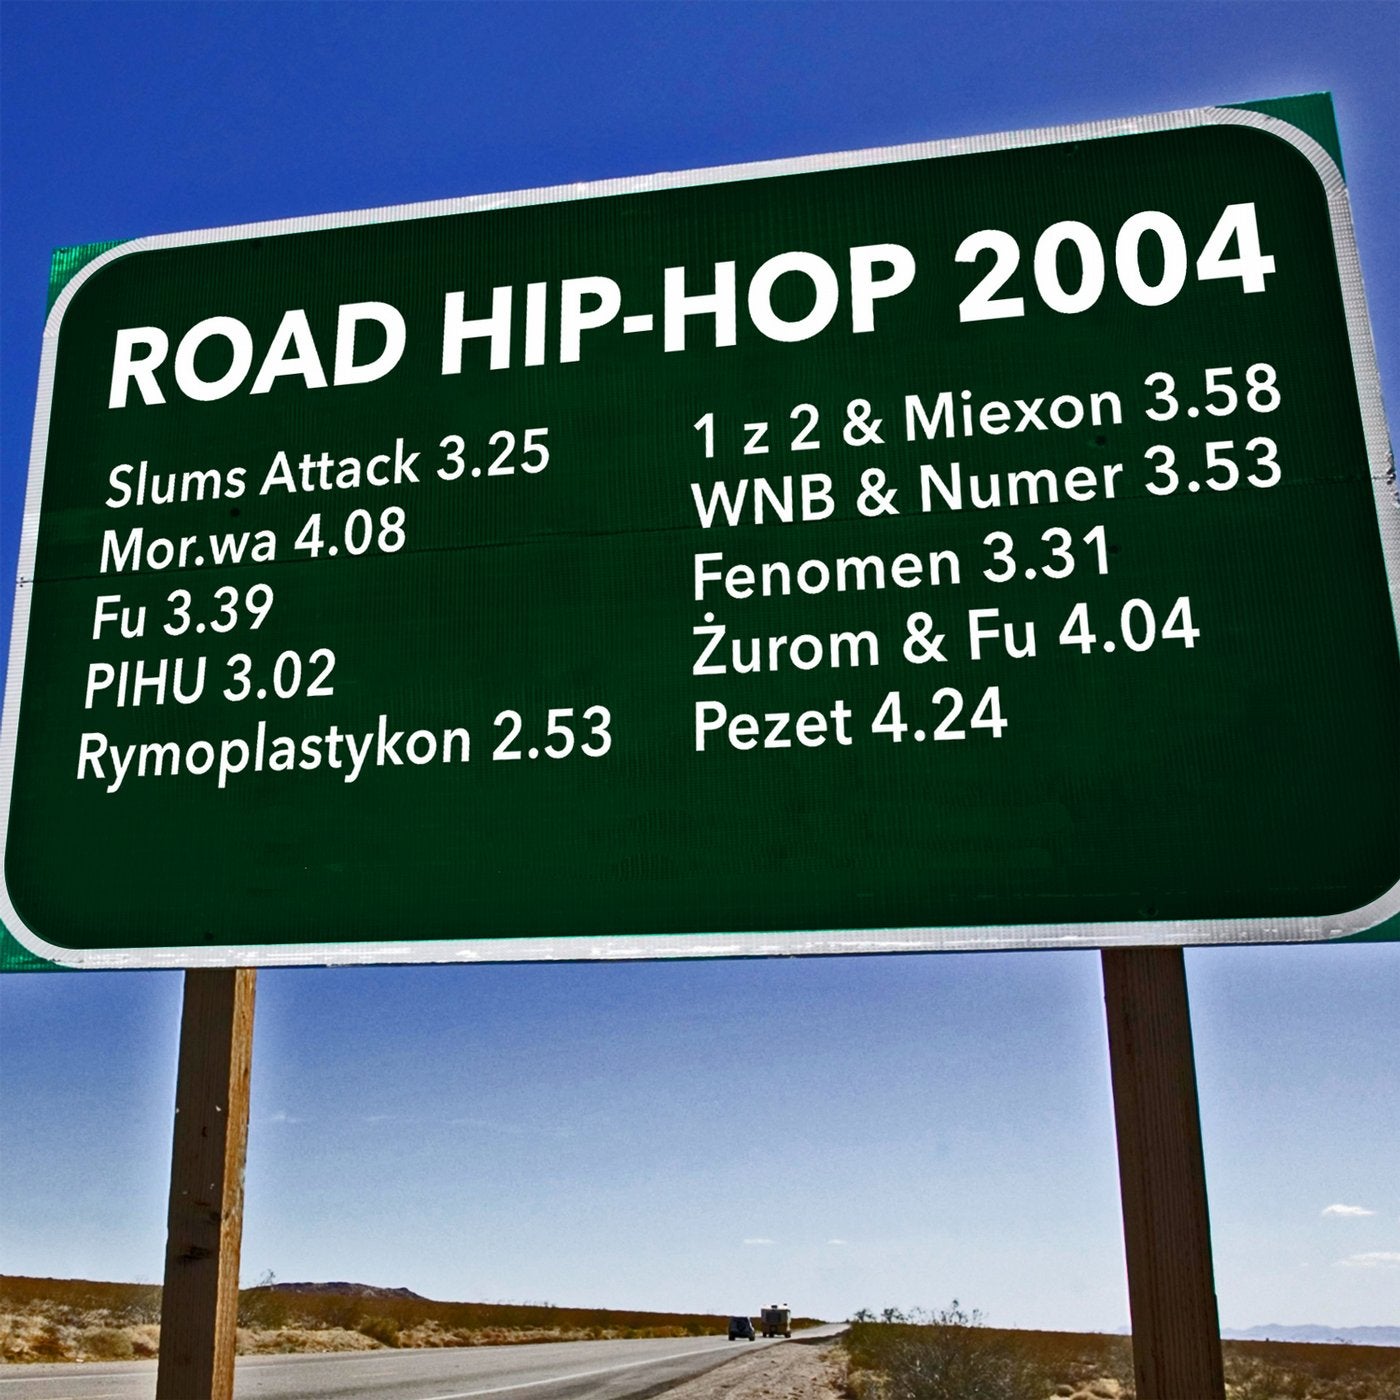 Road Hip-Hop 2004